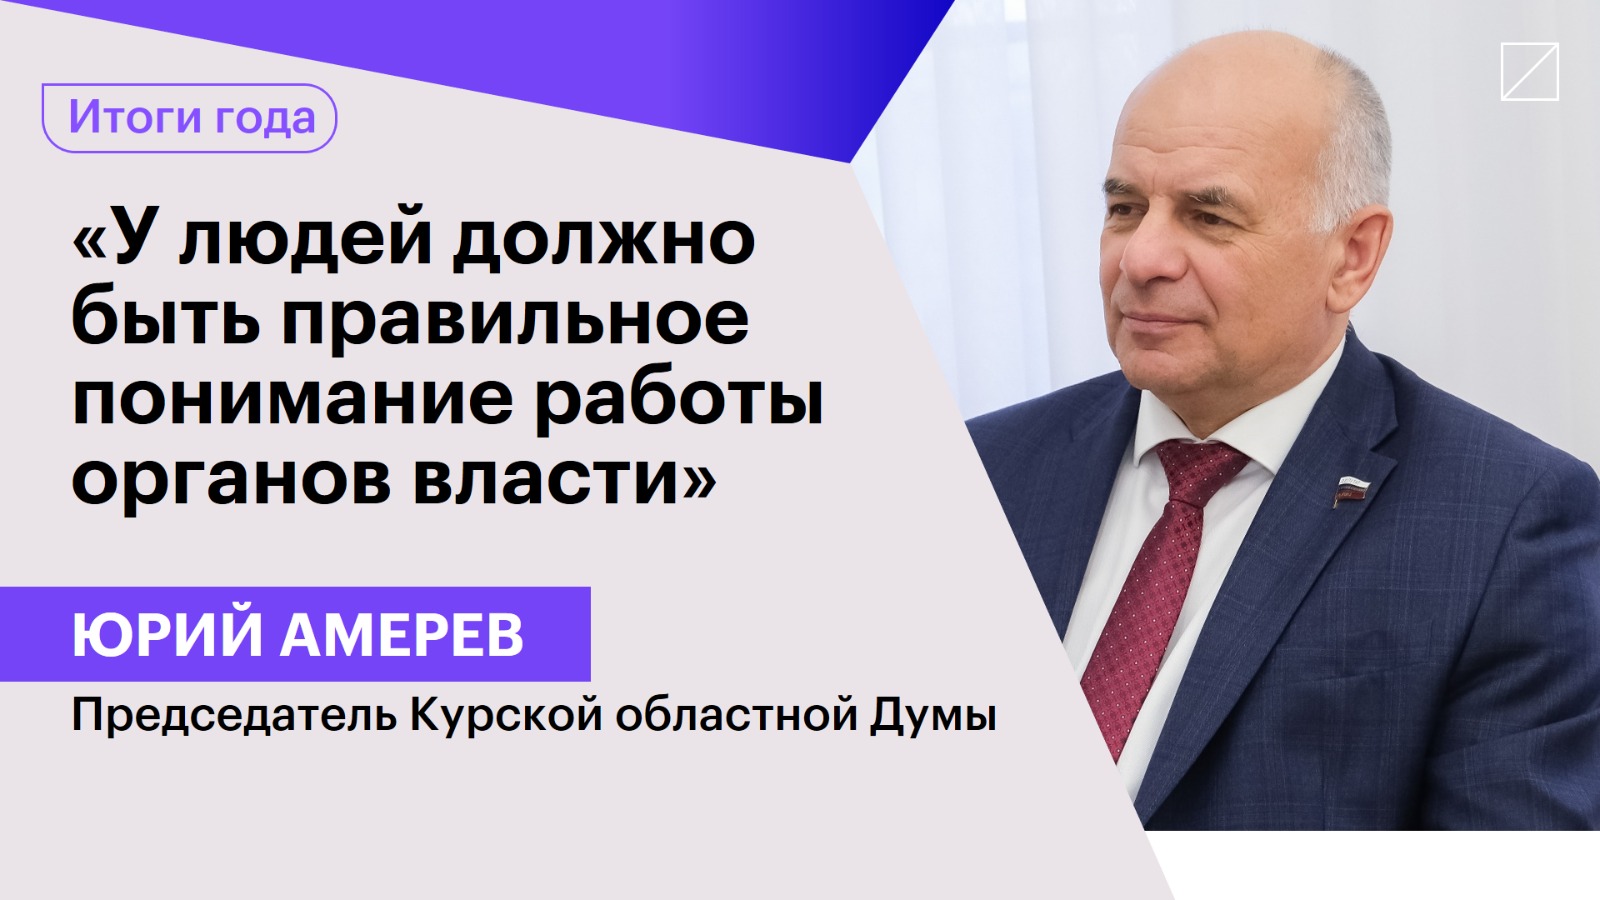 Юрий Амерев: «У людей должно быть правильное понимание работы органов власти»